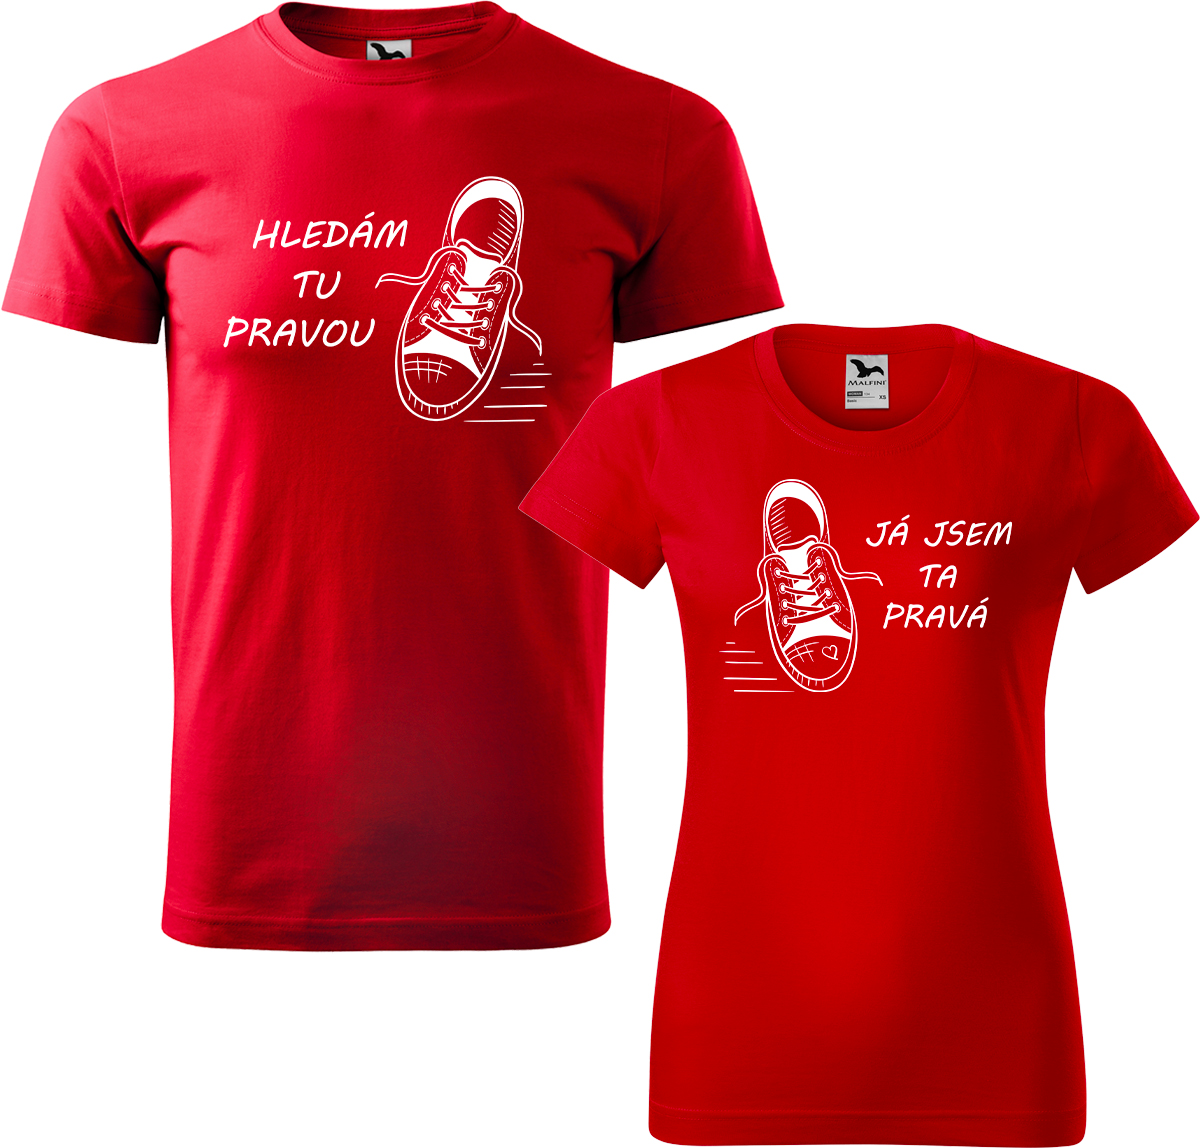 Trička pro páry - Kecky Barva: Červená (07), Velikost dámské tričko: XL, Velikost pánské tričko: M